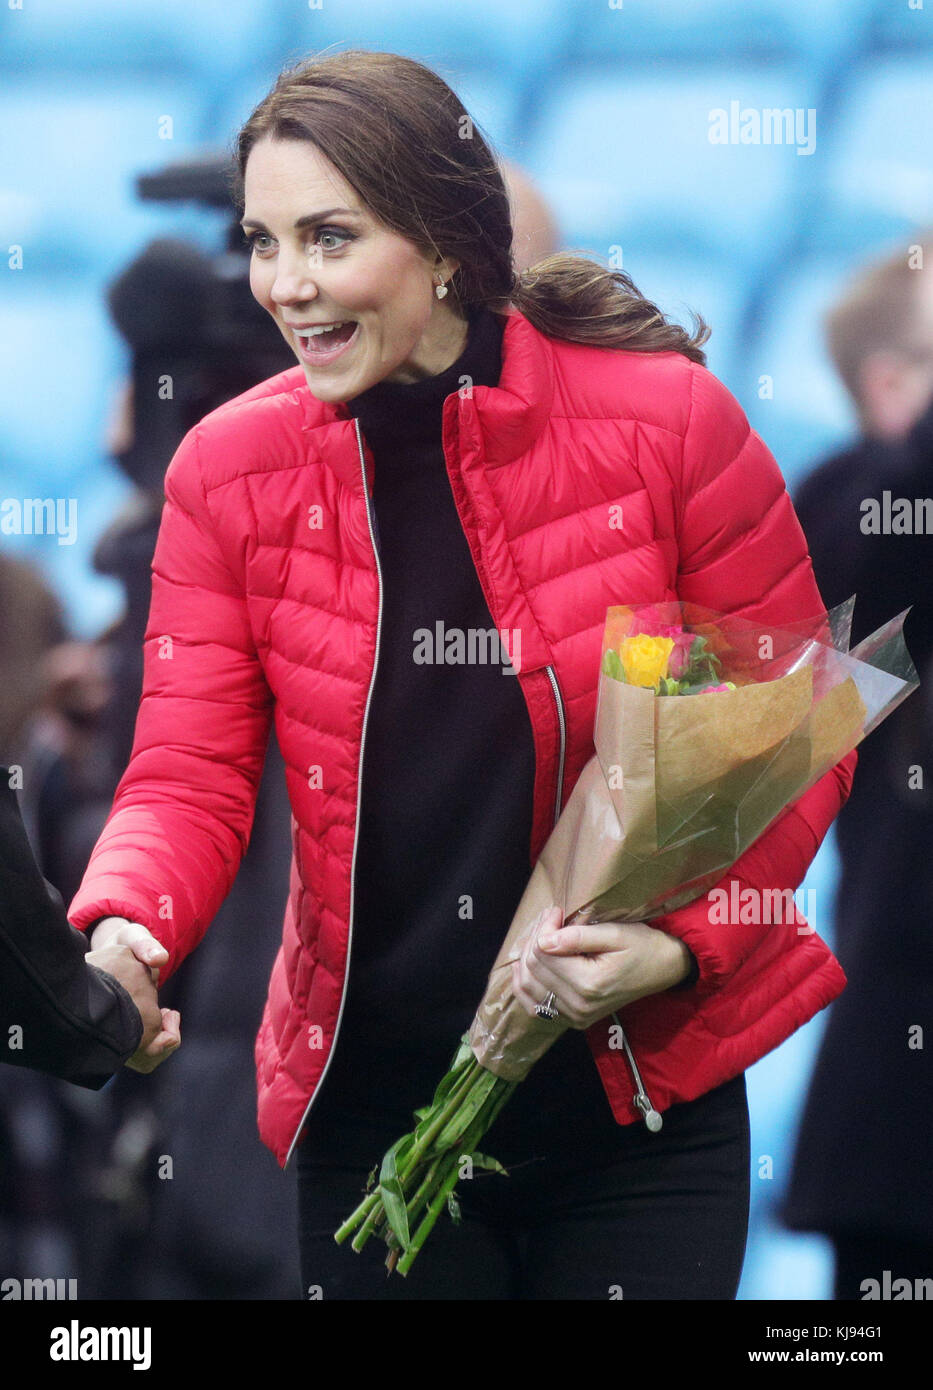 La Duchessa di Cambridge è fiorita durante una visita al Villa Park Ground del club di calcio Aston Villa a Birmingham. Foto Stock